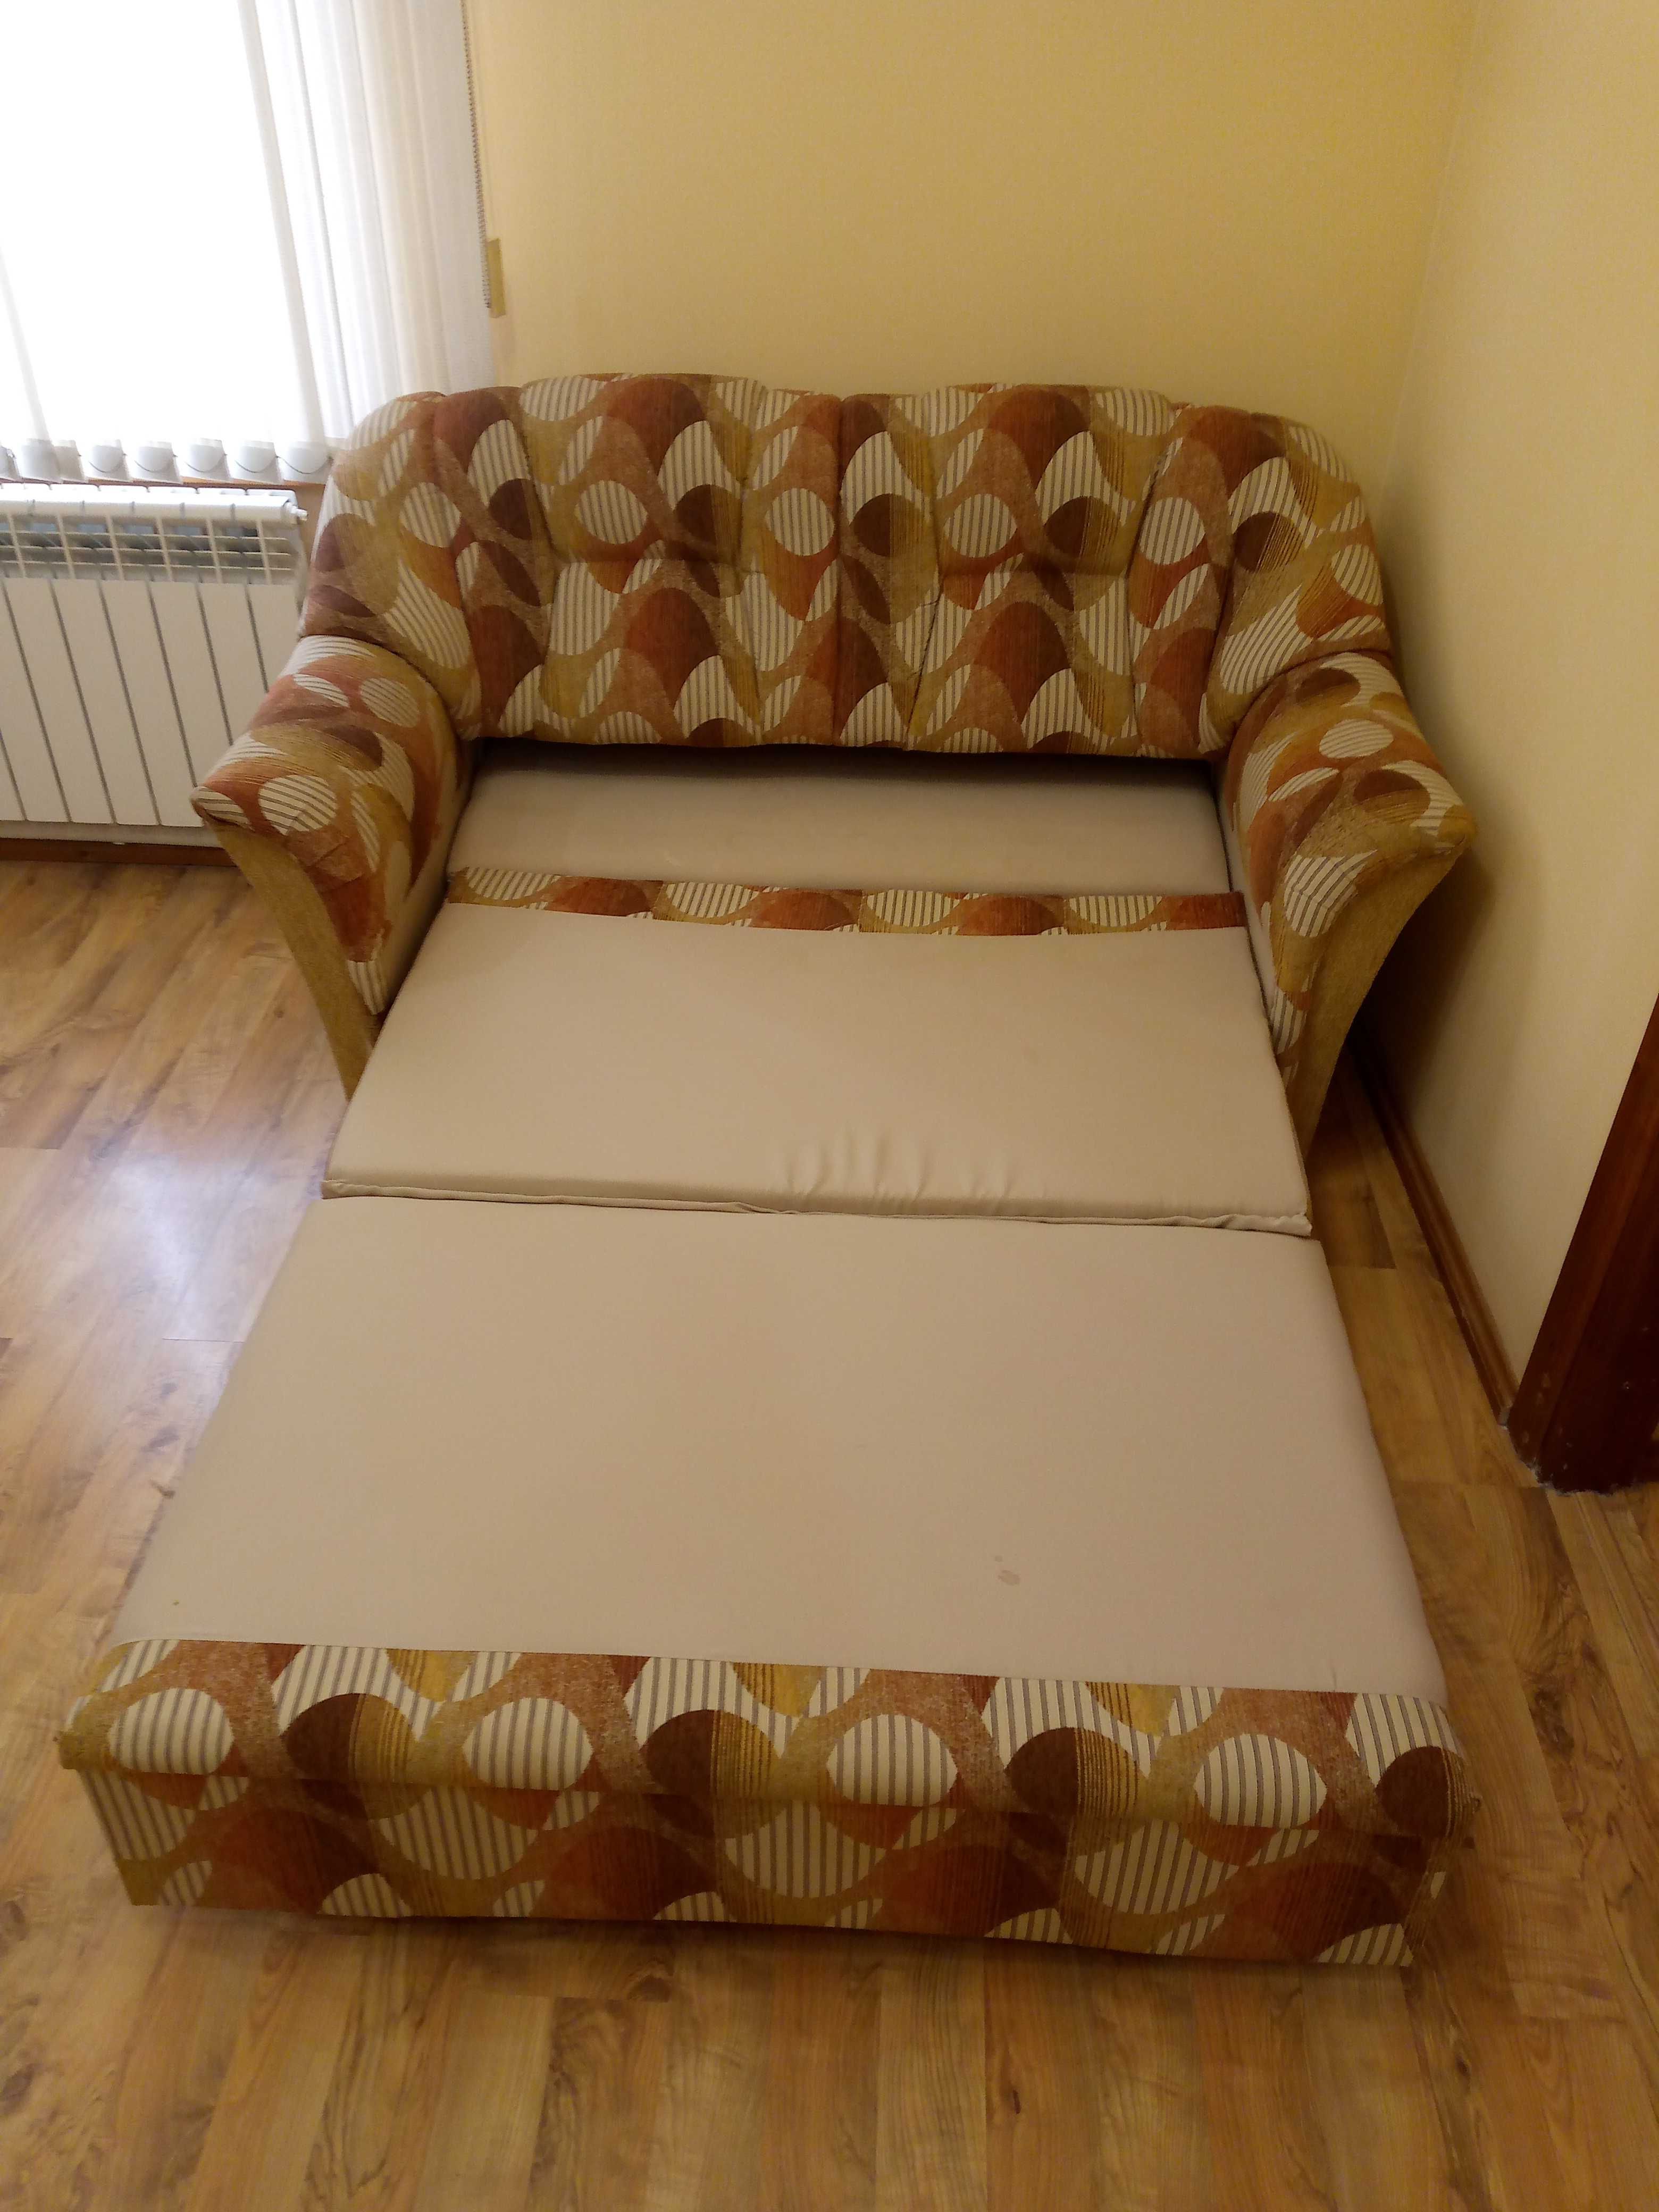 Раскладной диван кровать в хорошем состоянии.Размер 170х90 и 117х190см